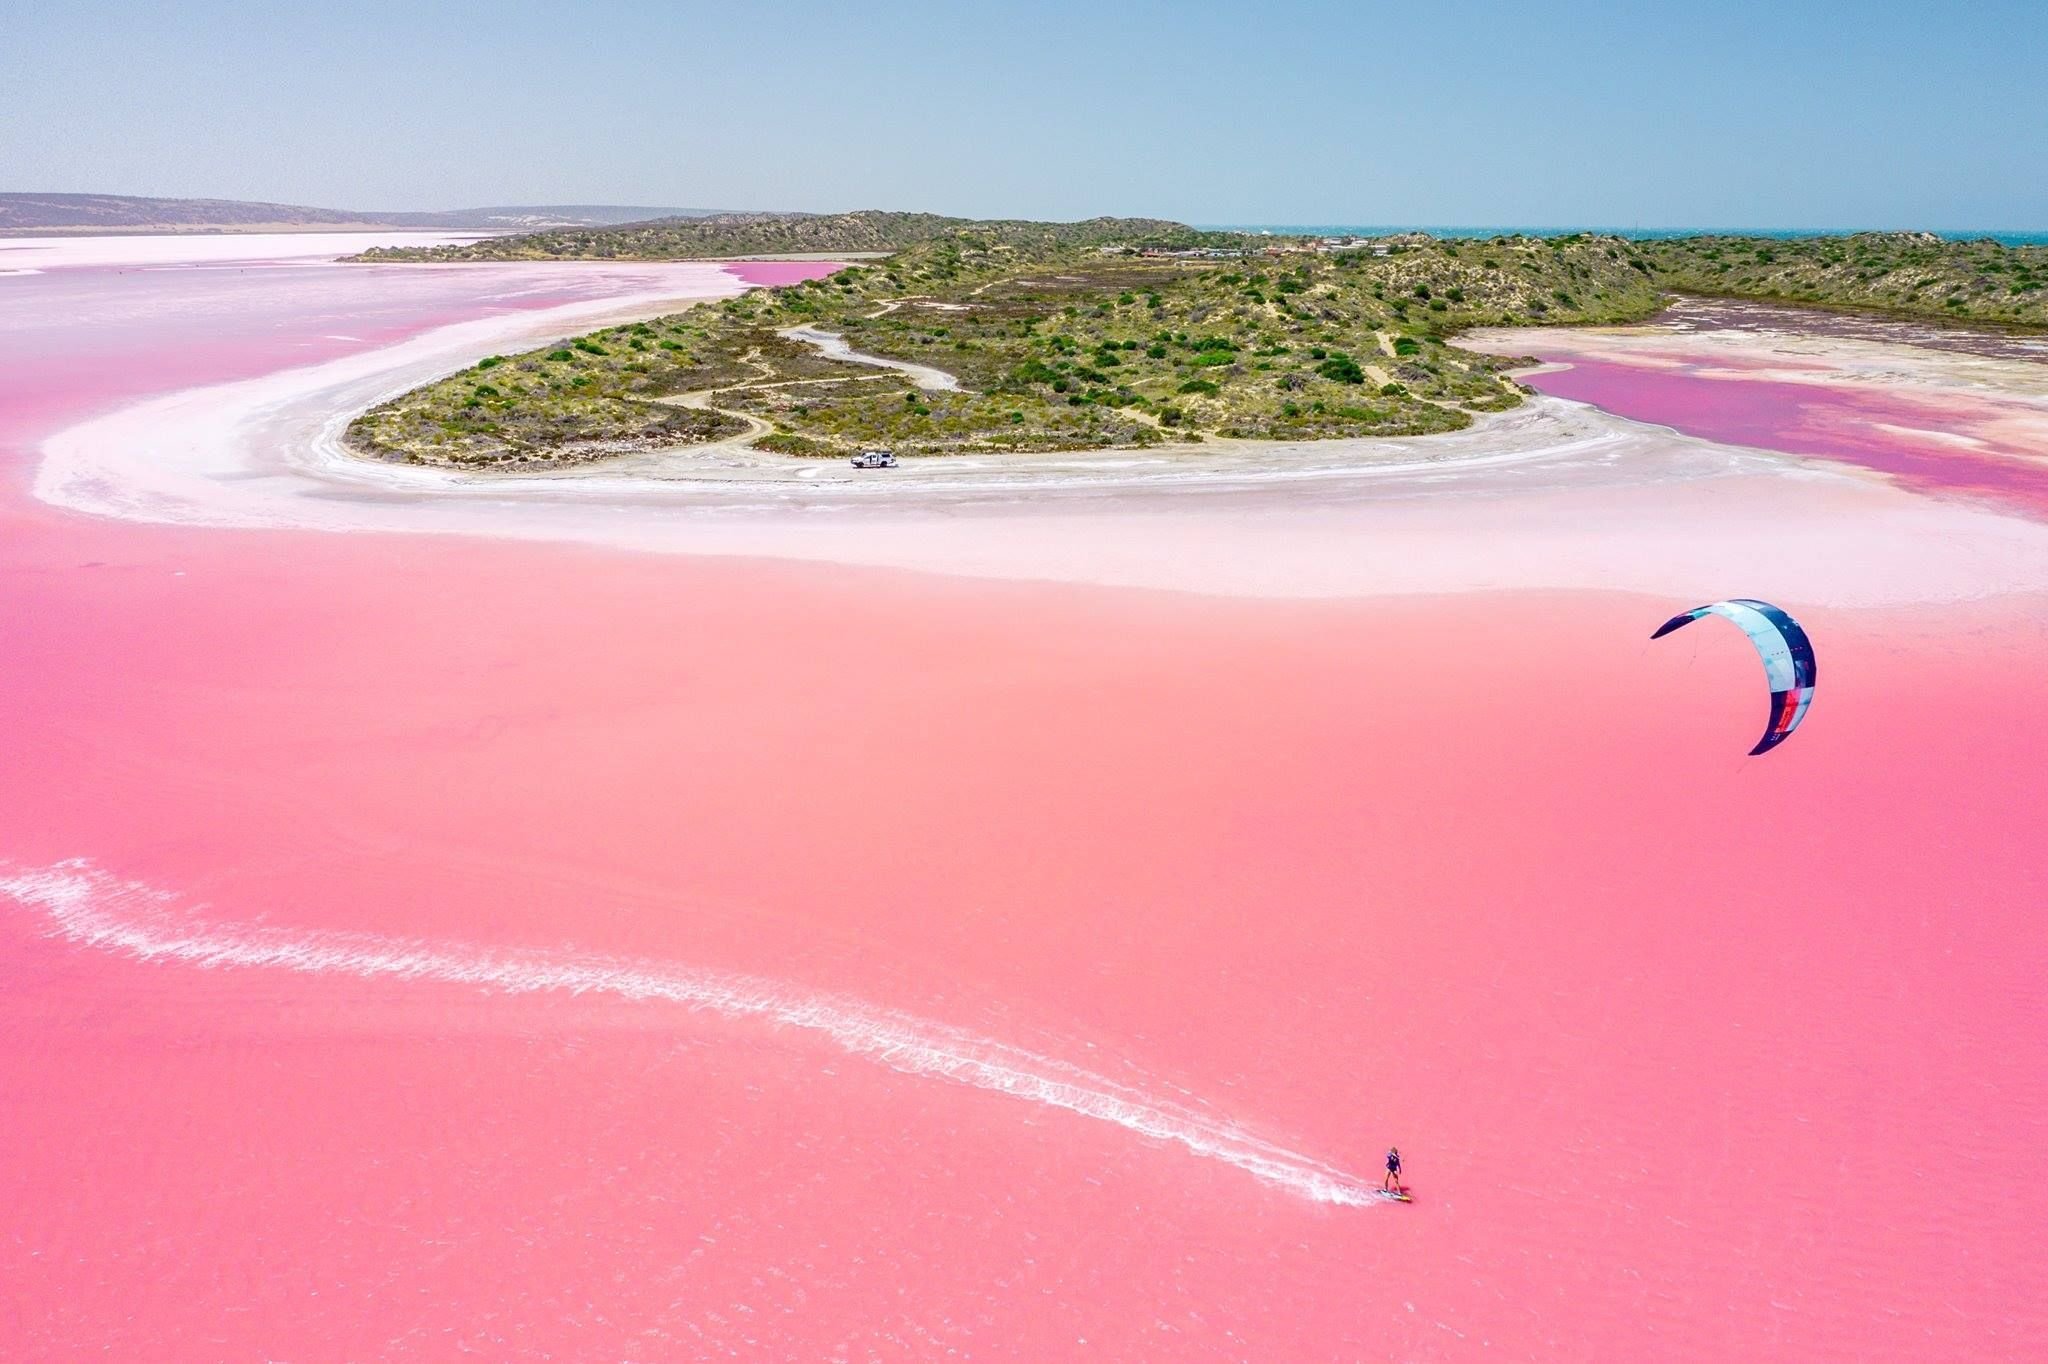 Водоем который окрашивается в нежно розовый цвет. Озеро Хиллер (остров Миддл). Озеро Хиллер (hillier), Австралия. Розовое озеро Хиллер Австралия. Озеро Лагуна Хатт Австралия.